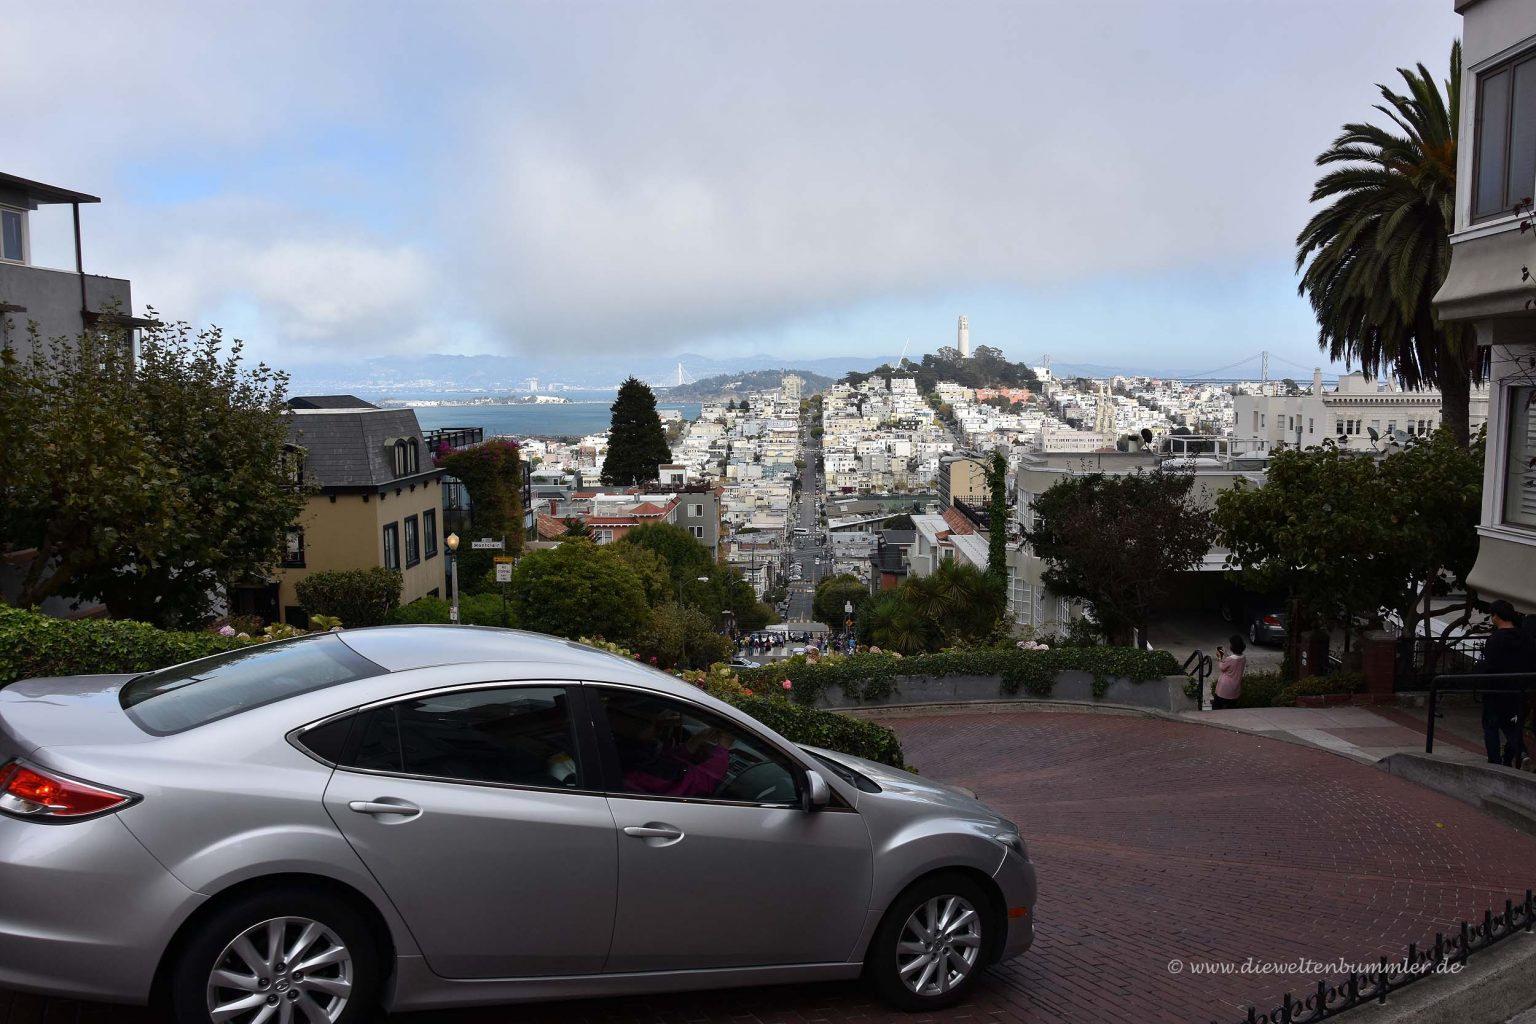 Kurvige und steile Straße in San Francisco